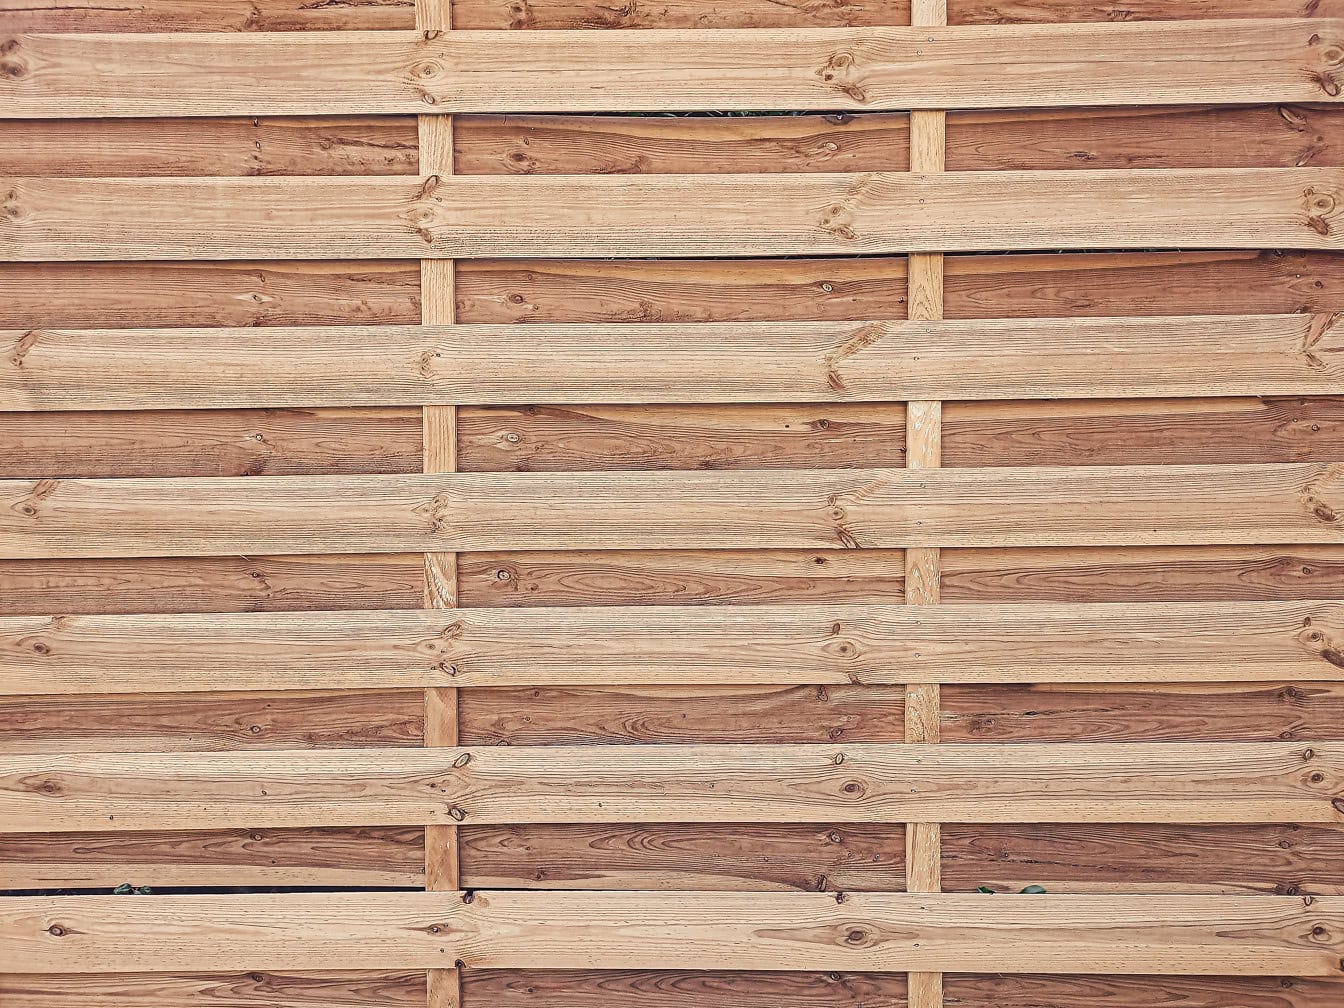 Textura da placa rústica do painel de madeira feita de ripas de pinho finas empilhadas horizontalmente